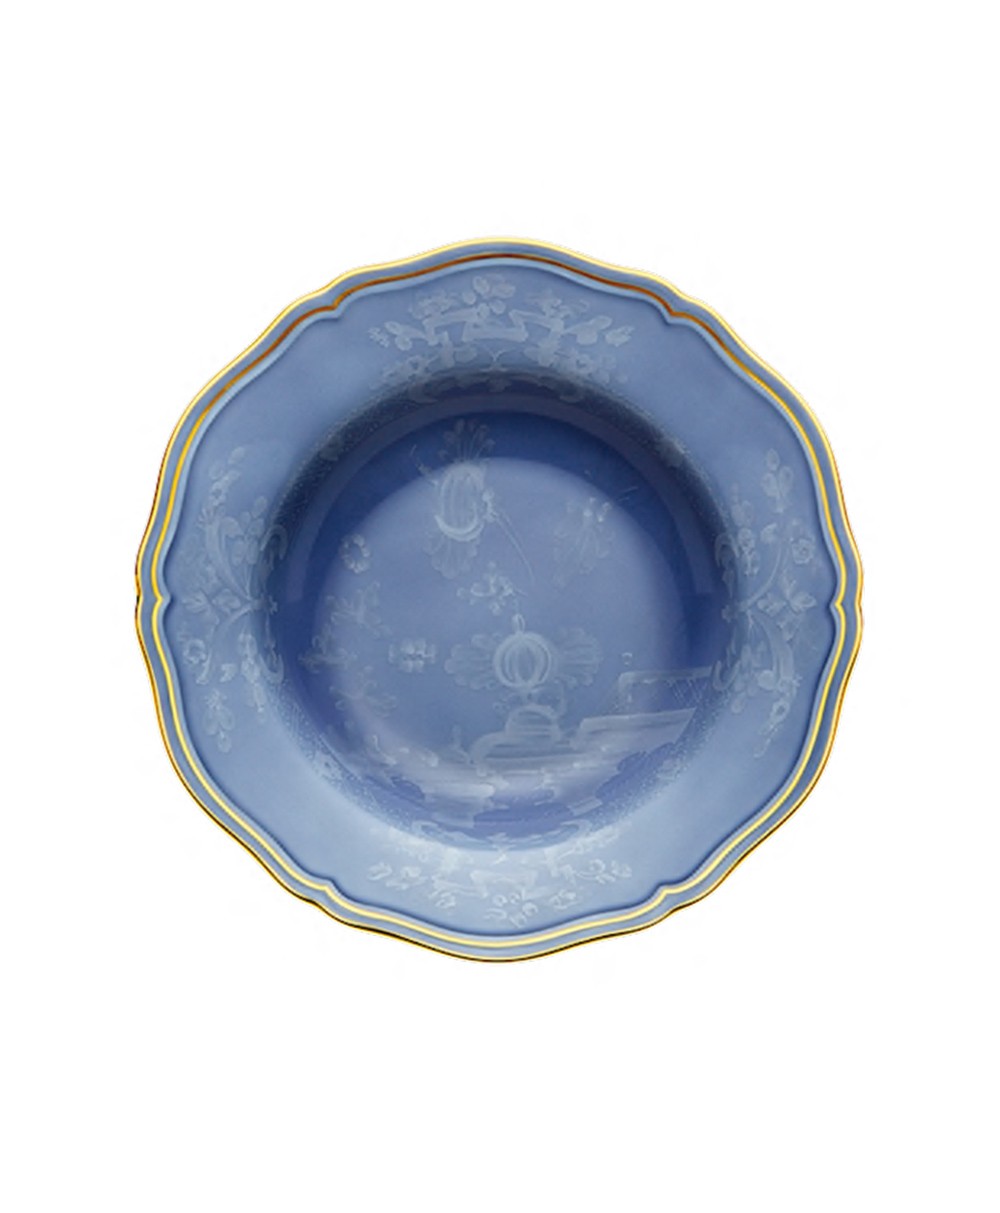 Produktbild "Oriente Pervinca Suppenteller" von Ginori 1735 im RAUM Concept store